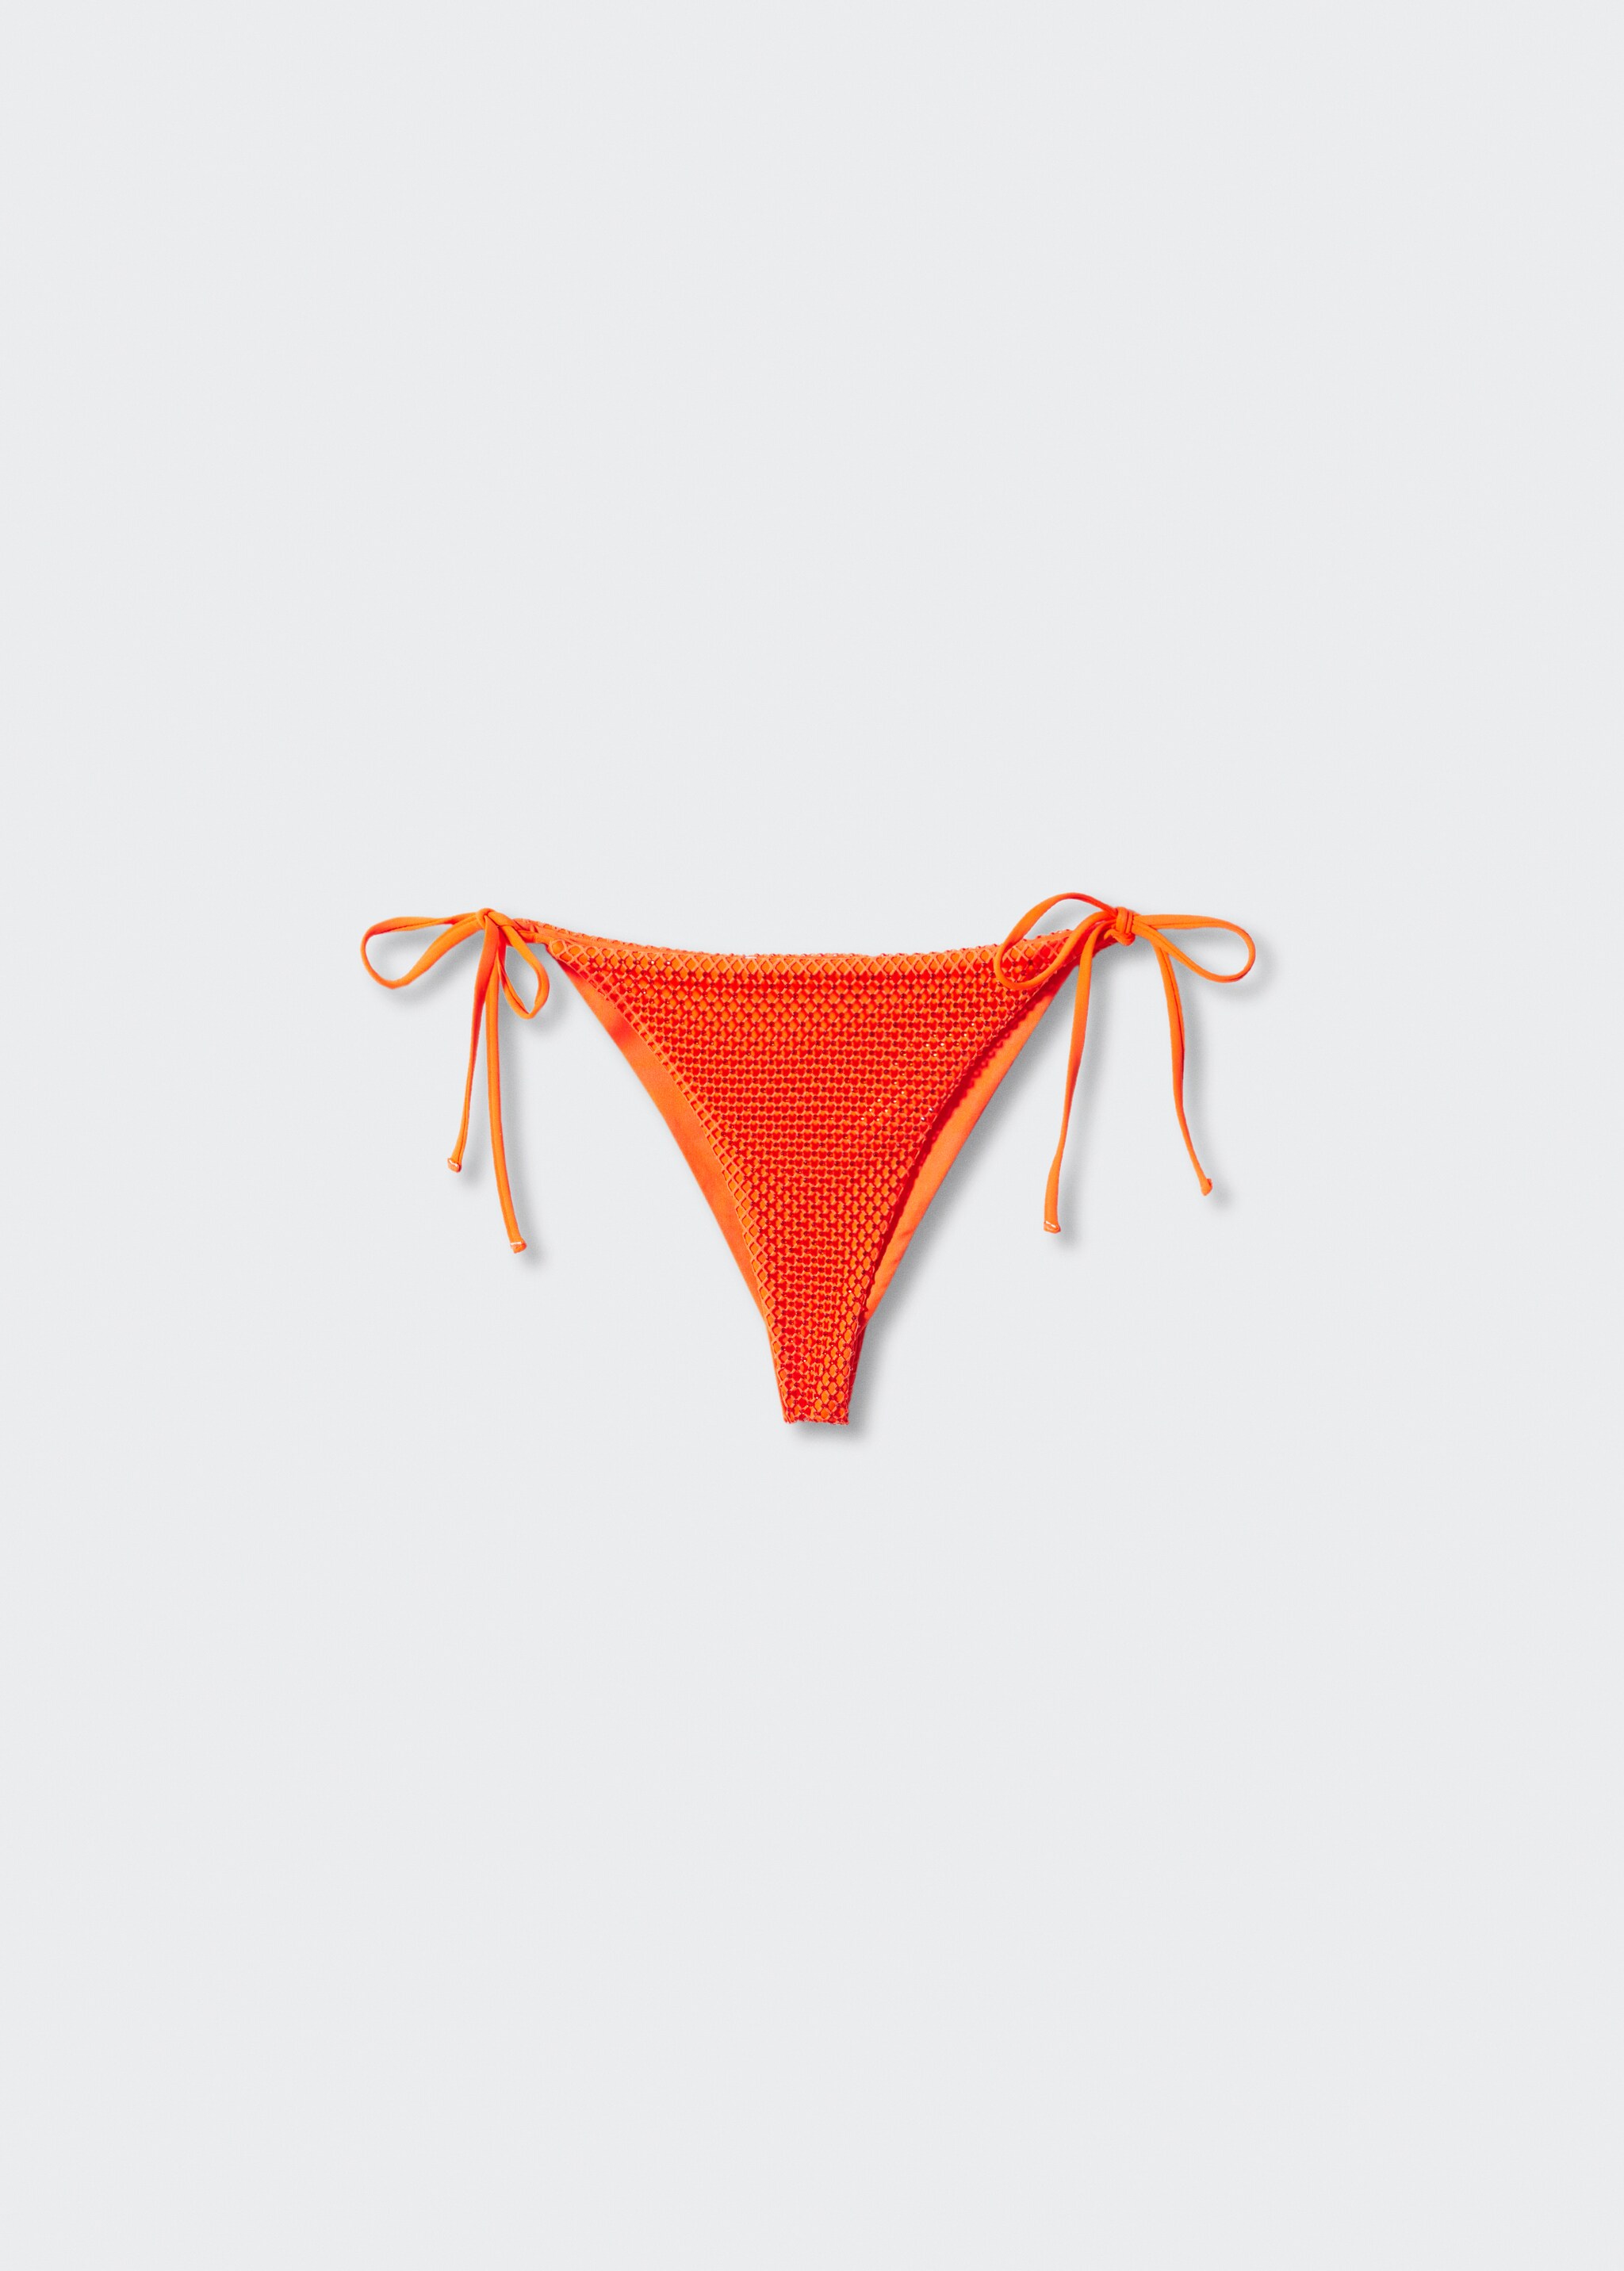 Calceta bikini brasilera strass - Artículo sin modelo